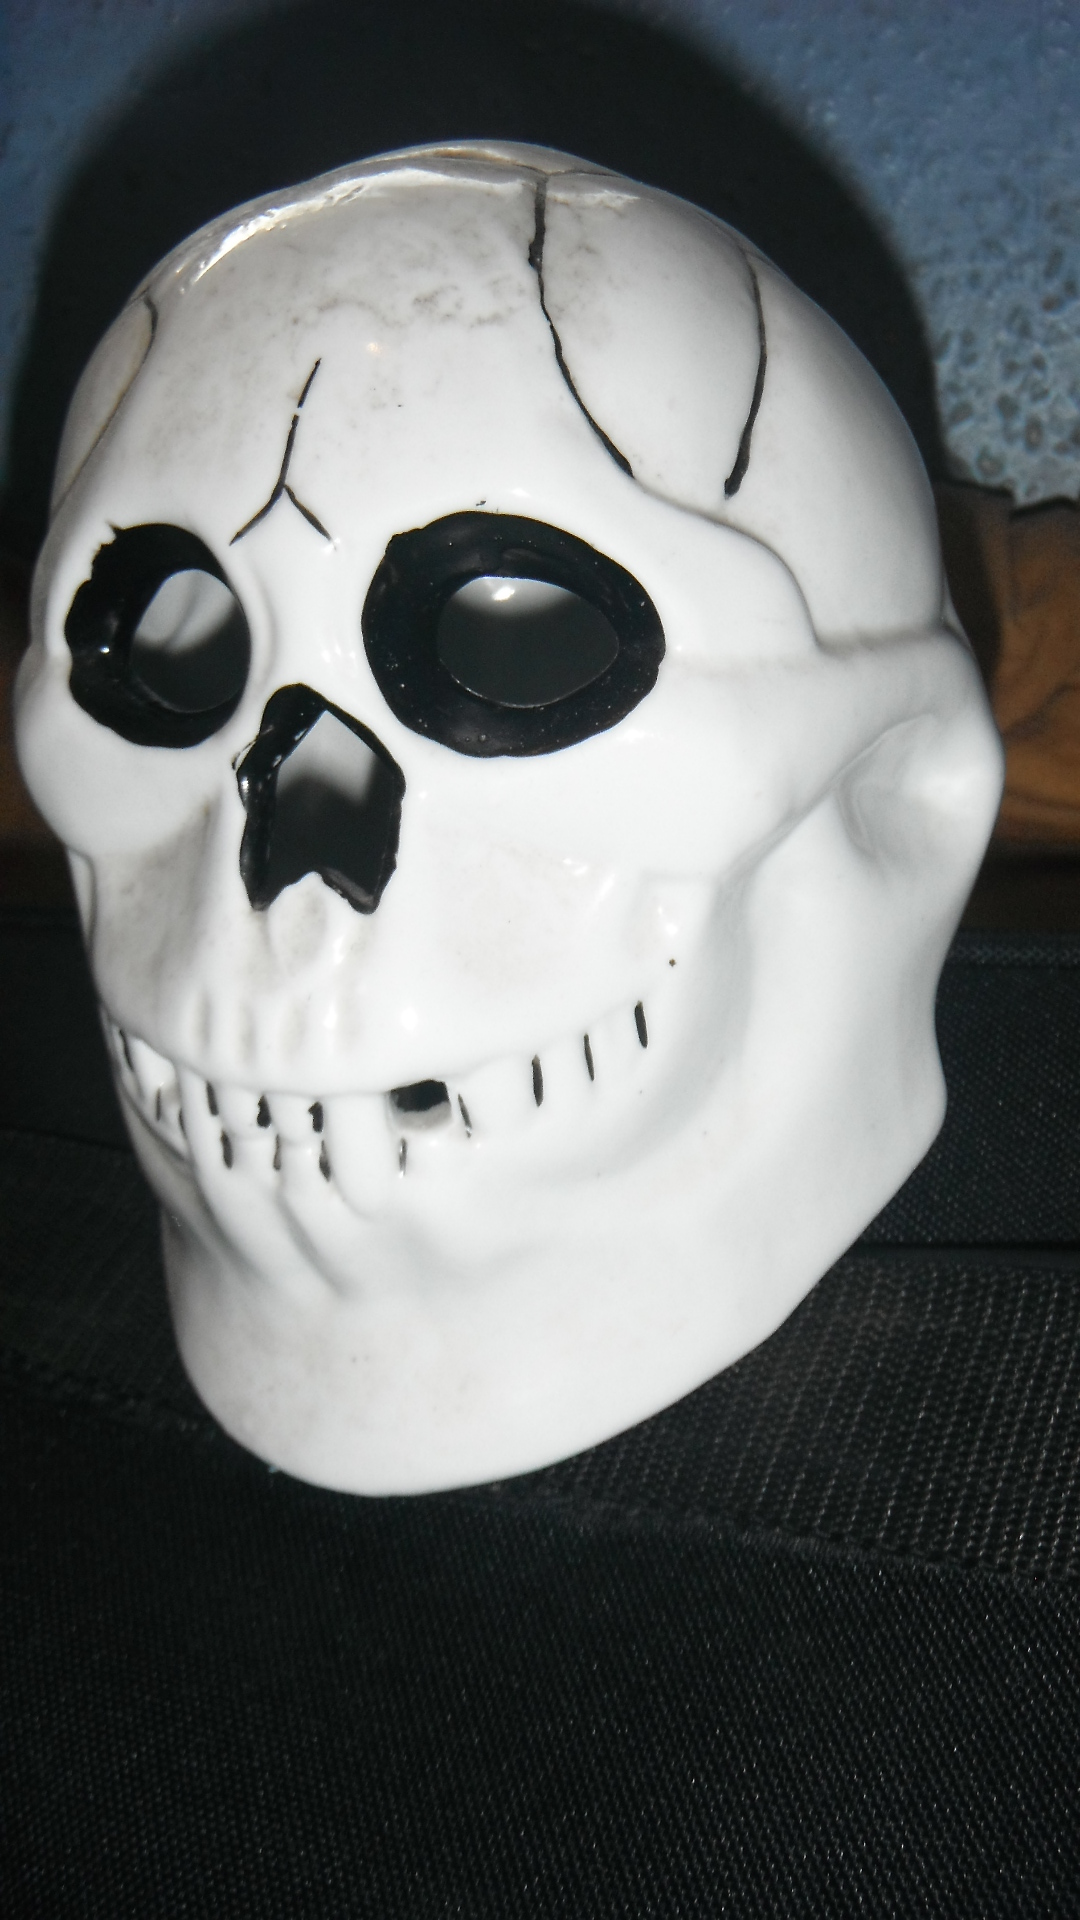 Yorrick the horror skull, taken by me